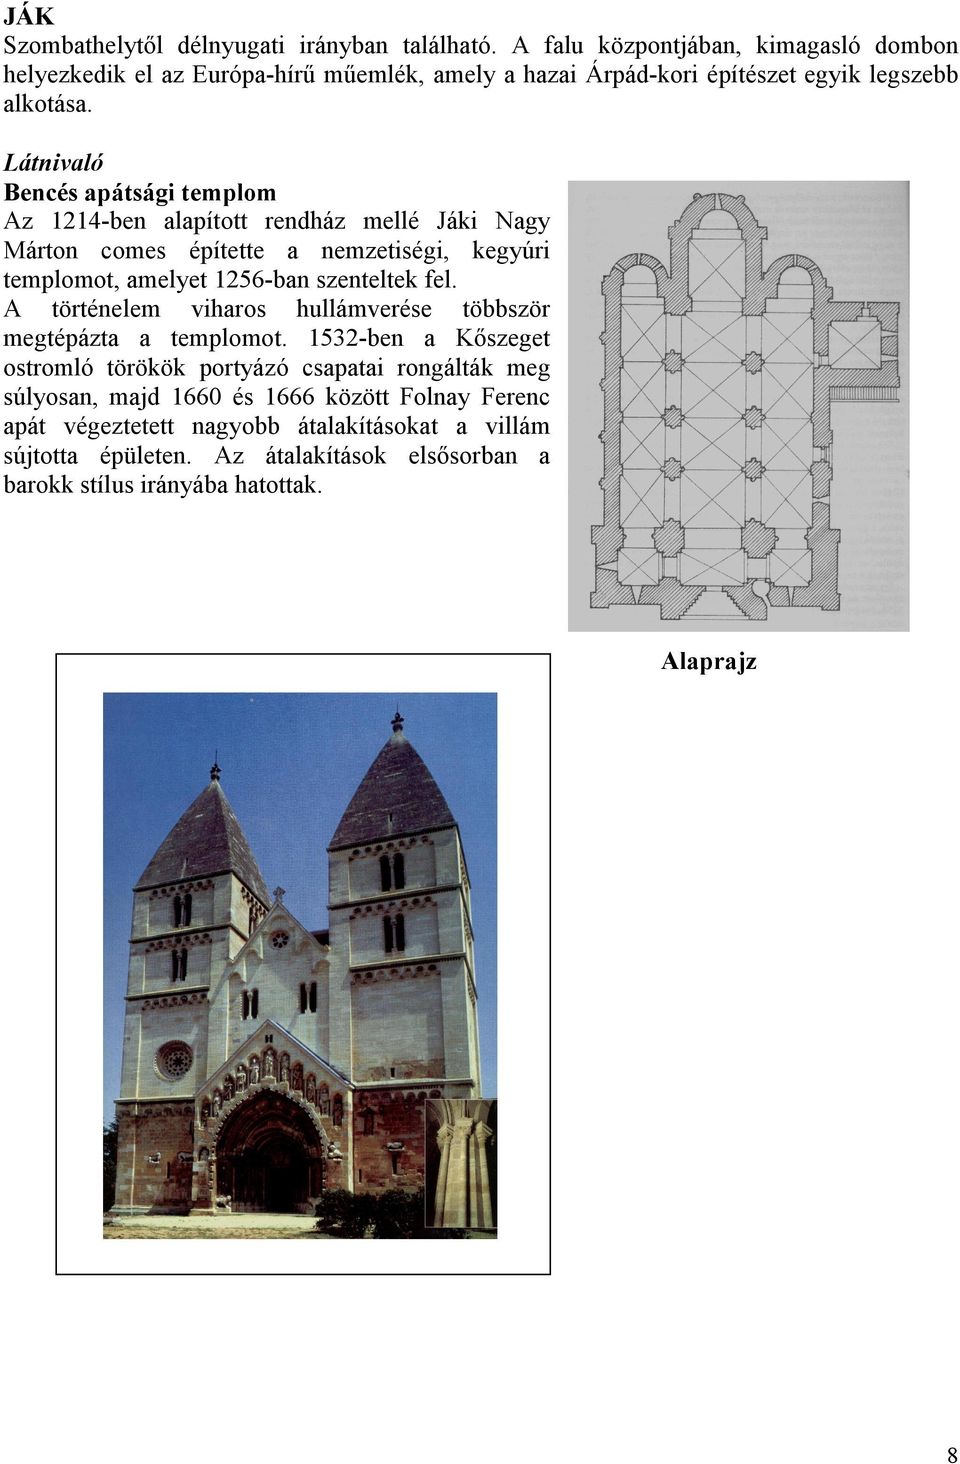 Látnivaló Bencés apátsági templom Az 1214-ben alapított rendház mellé Jáki Nagy Márton comes építette a nemzetiségi, kegyúri templomot, amelyet 1256-ban szenteltek fel.